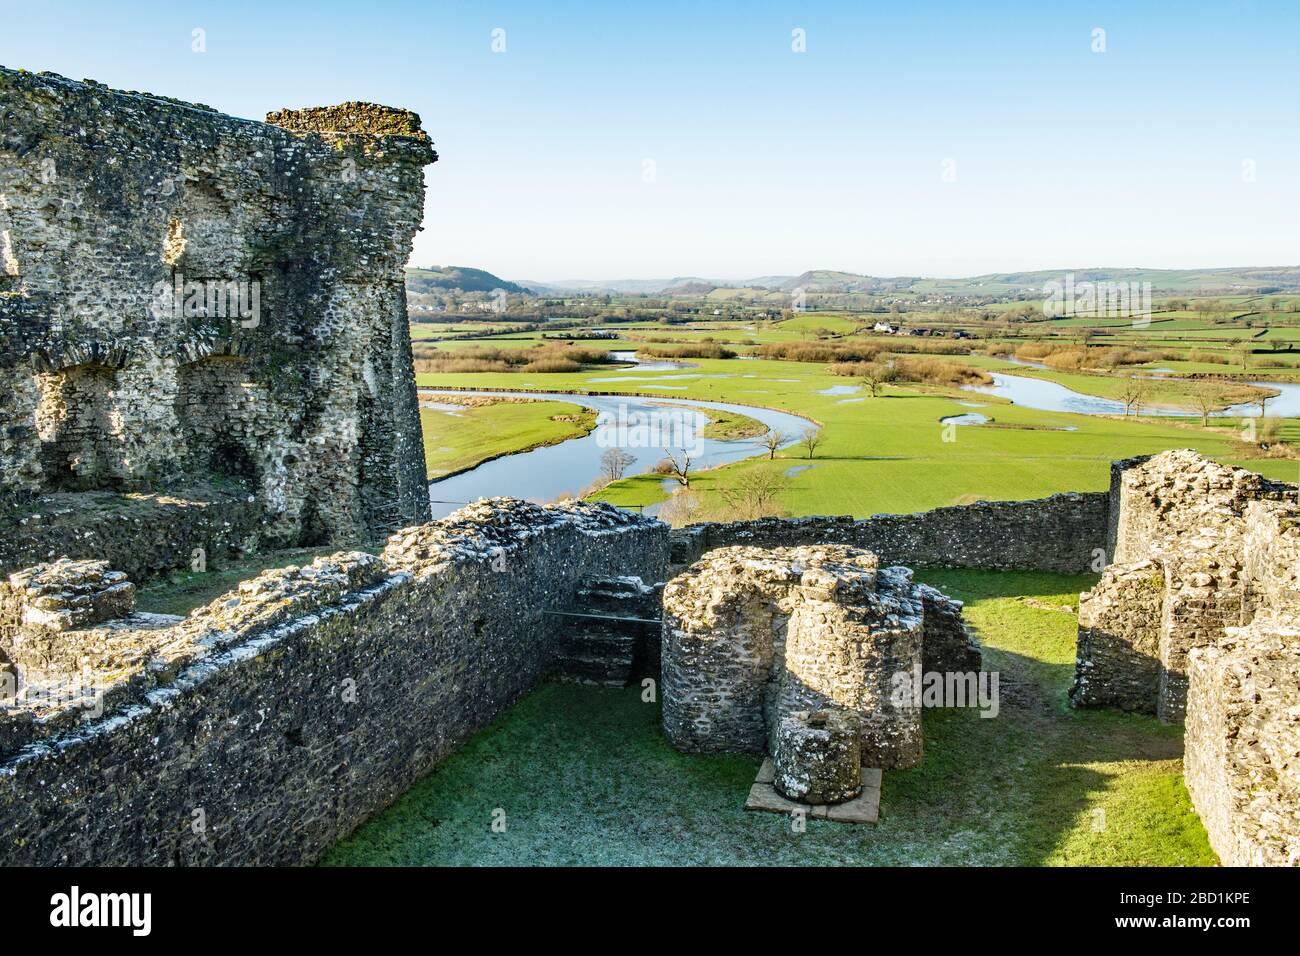 La vue sud sur la vallée de Tywi depuis le château de Dryslwyn dans le Carmarthenshire. Pris un jour ensoleillé en janvier Banque D'Images